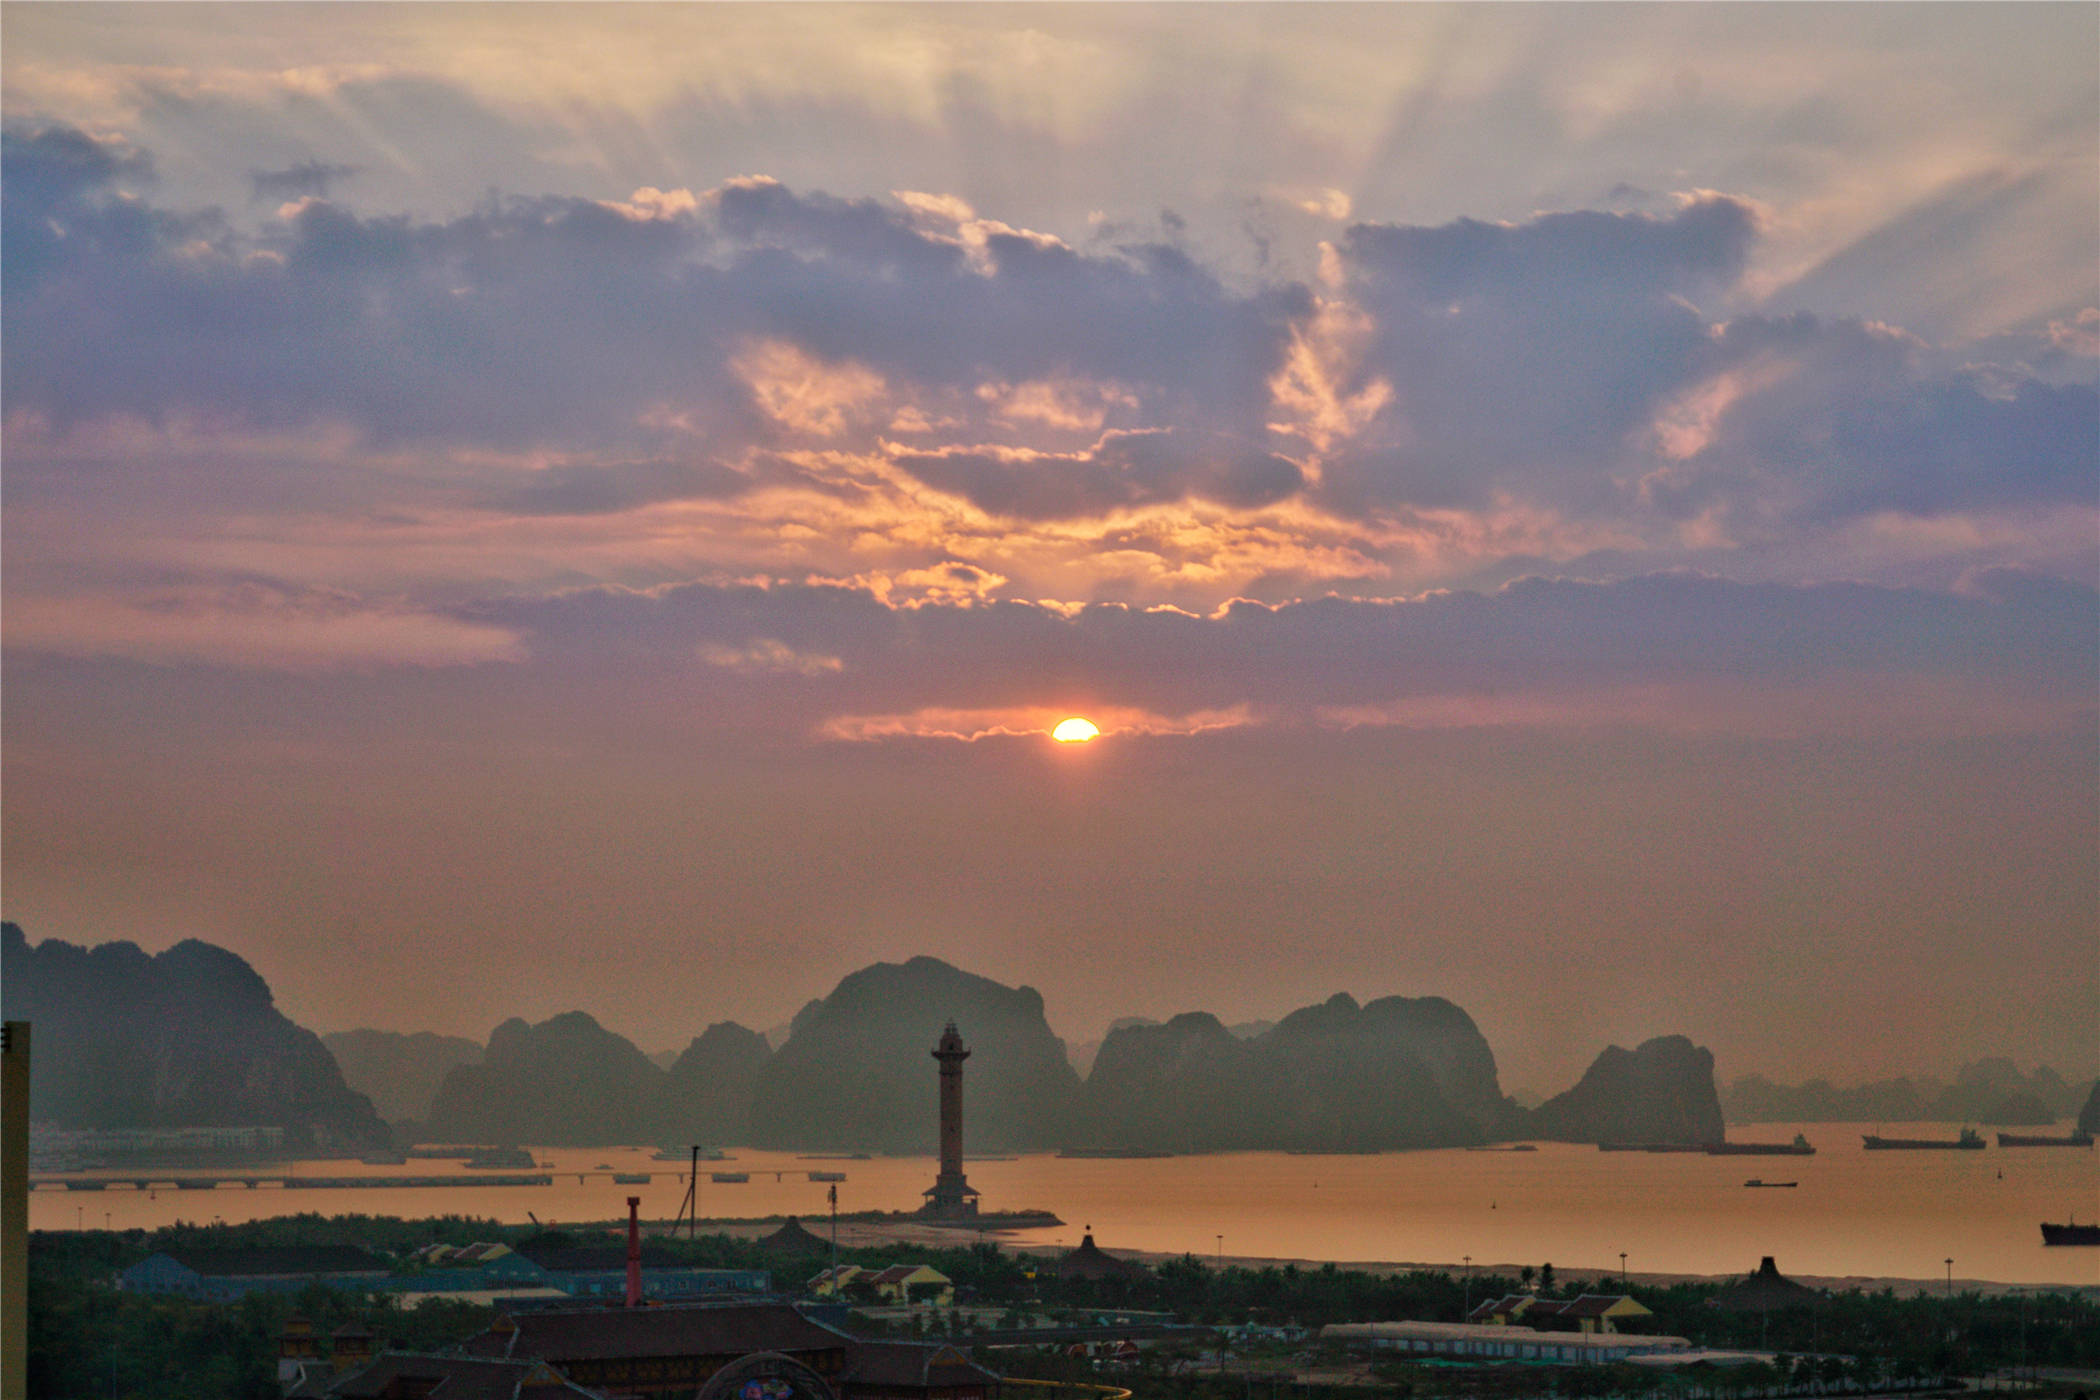 越南有个海上桂林，是世界自然遗产，风景秀丽迷人，中国游客来了都说好熟悉